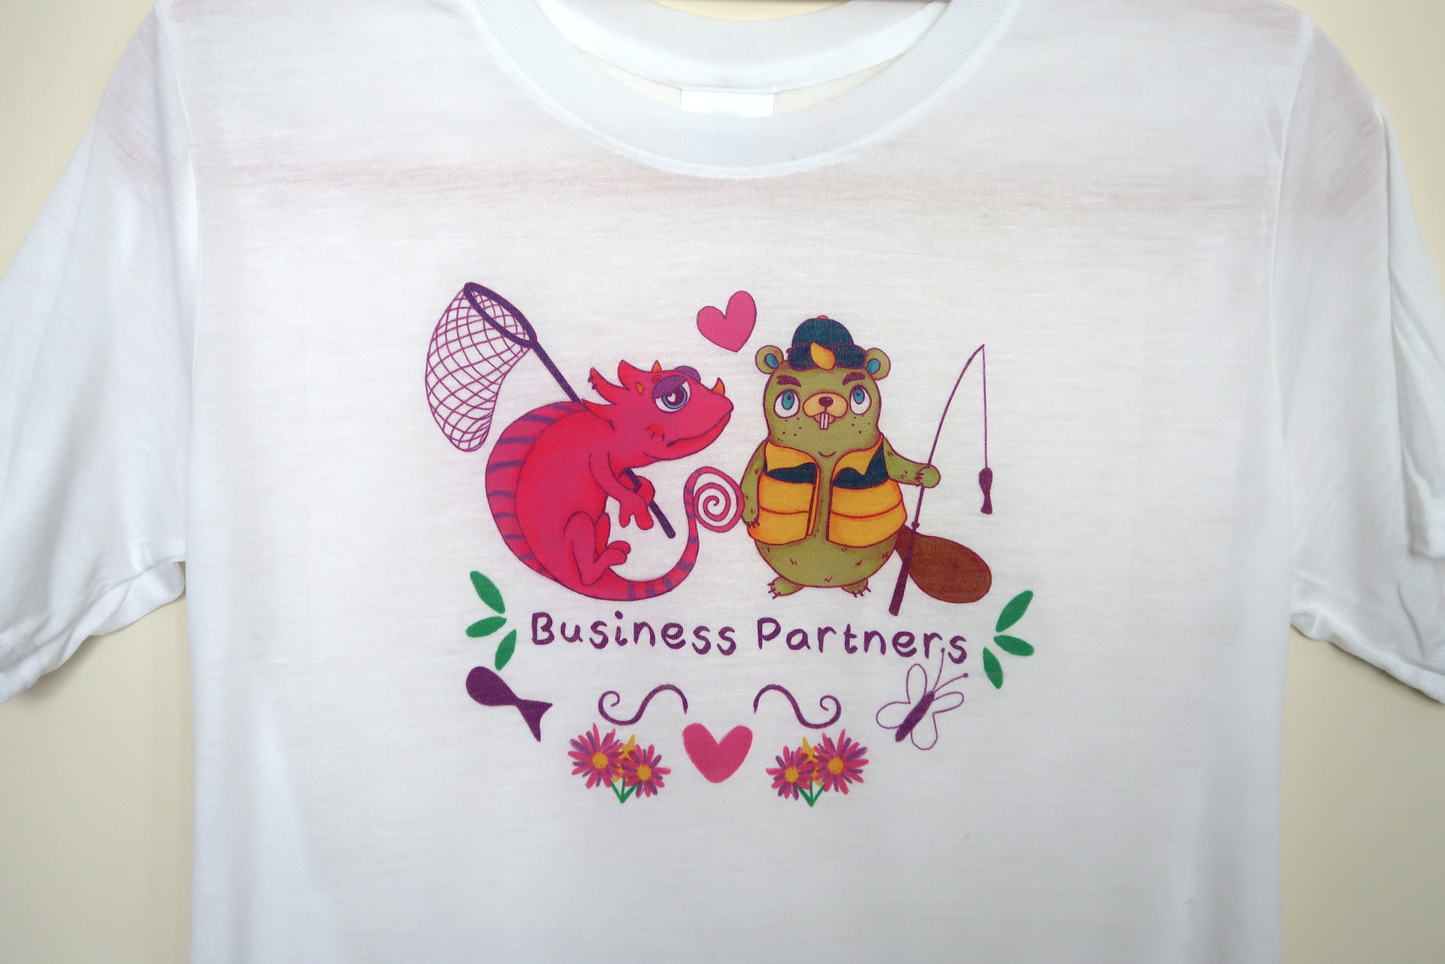 Business Partner T-shirt